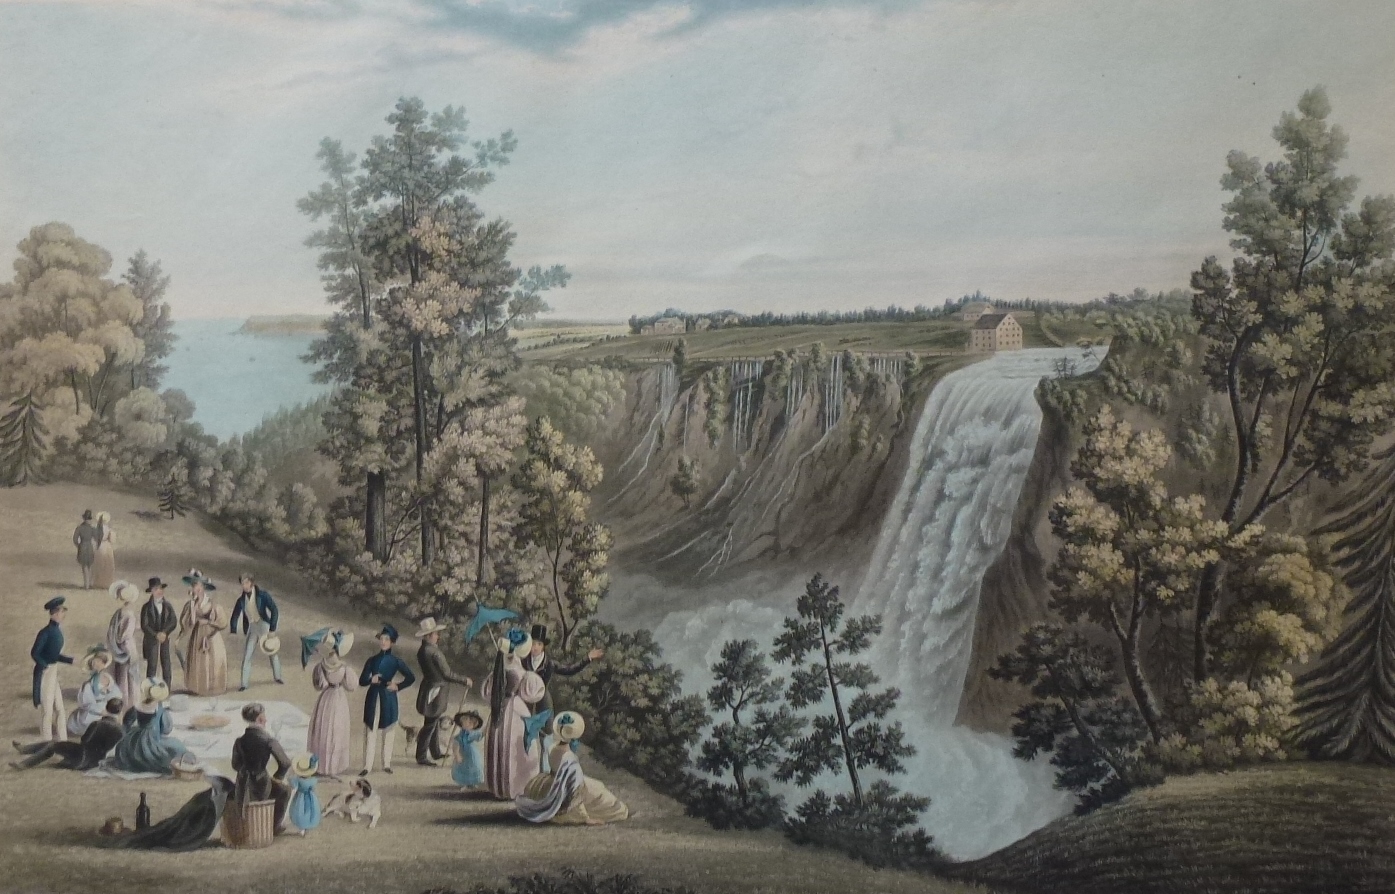 Pique-nique à la chute Montmorency. Gravure datant de 1833: The Falls of of Montmorency, (Quebec in Distance) par C. Hunt, d’après un desssin de James Cockburn.